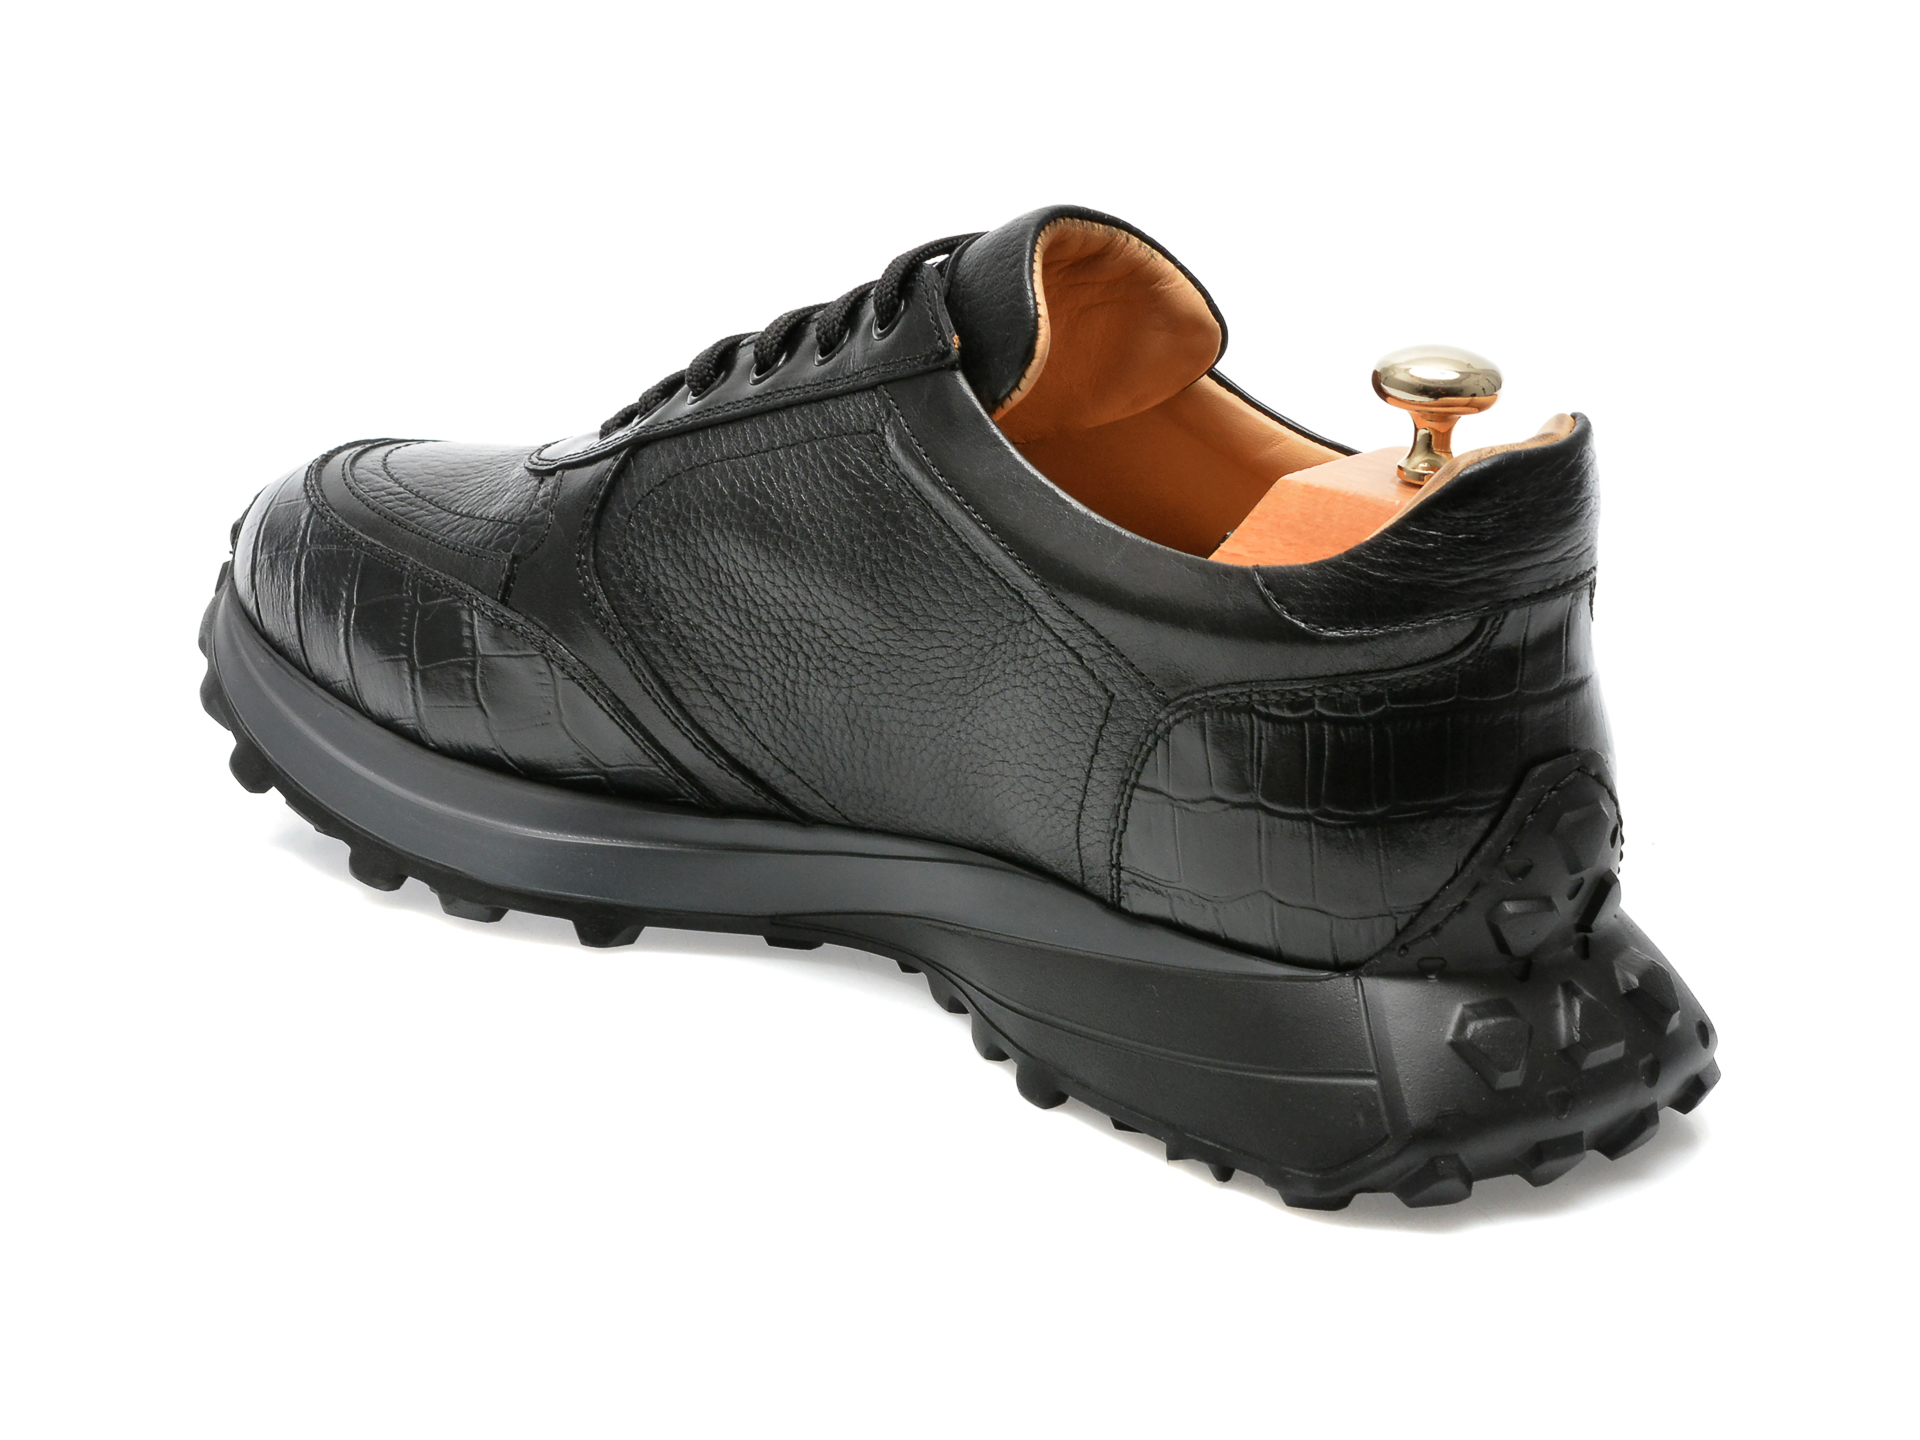 Poze Pantofi LE COLONEL negri, 66712, din piele naturala Tezyo